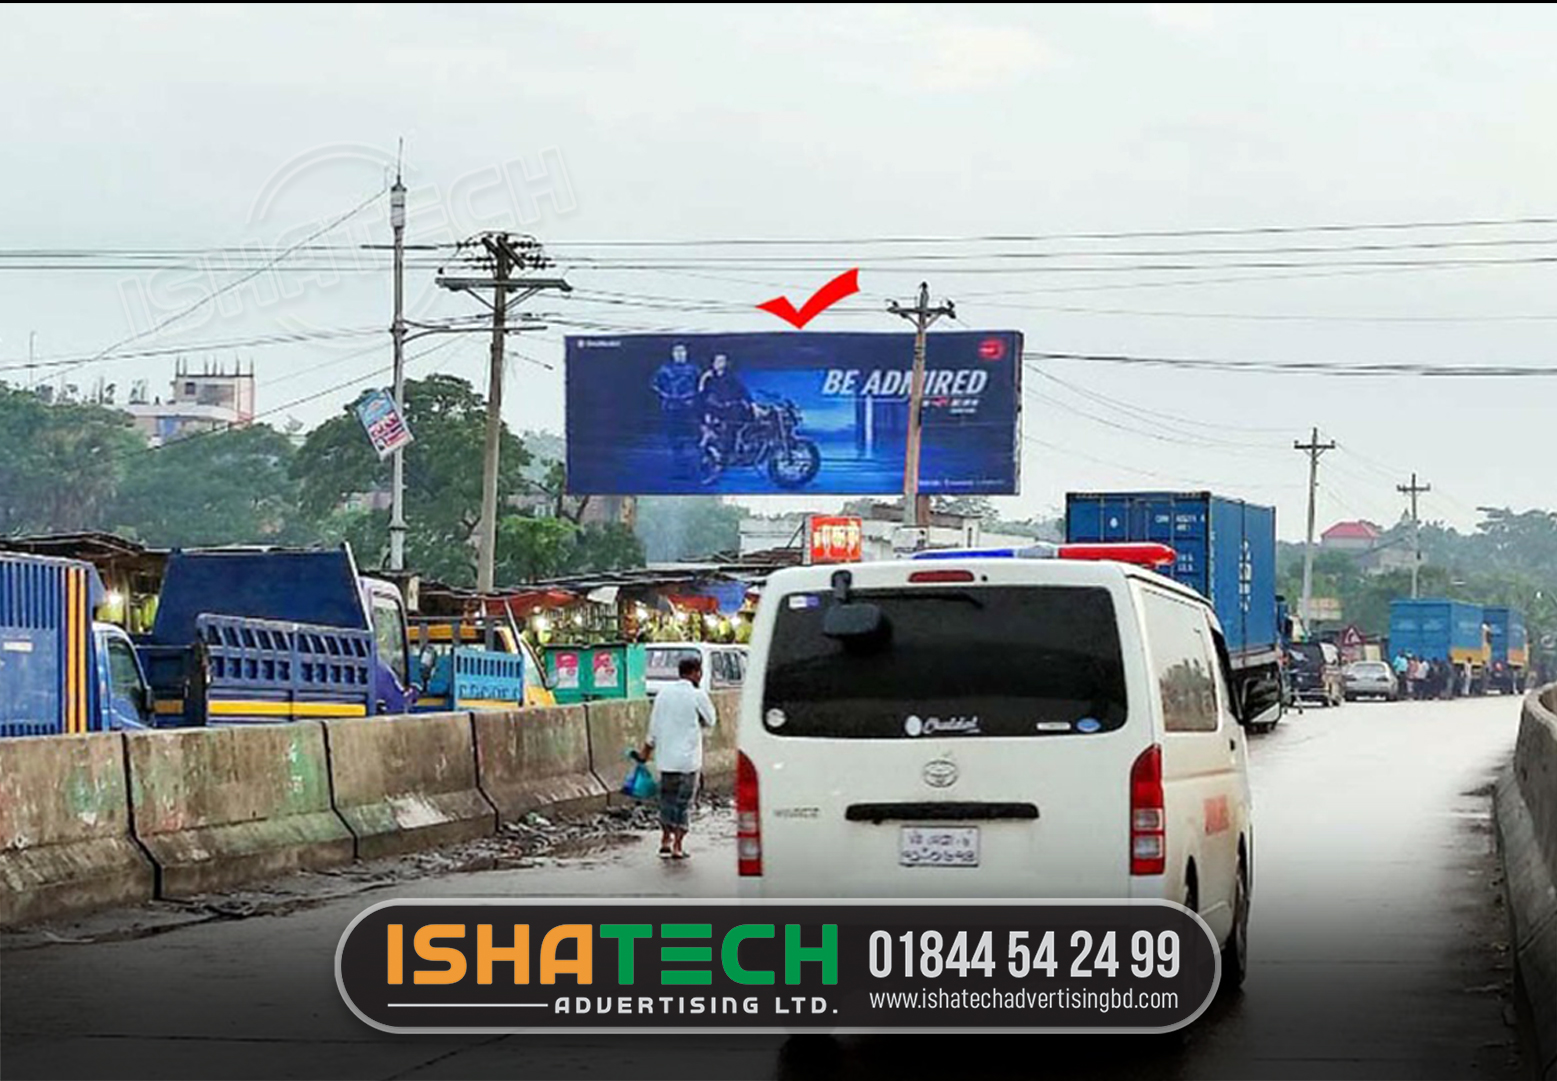 Advertising on Hoarding in Dhaka